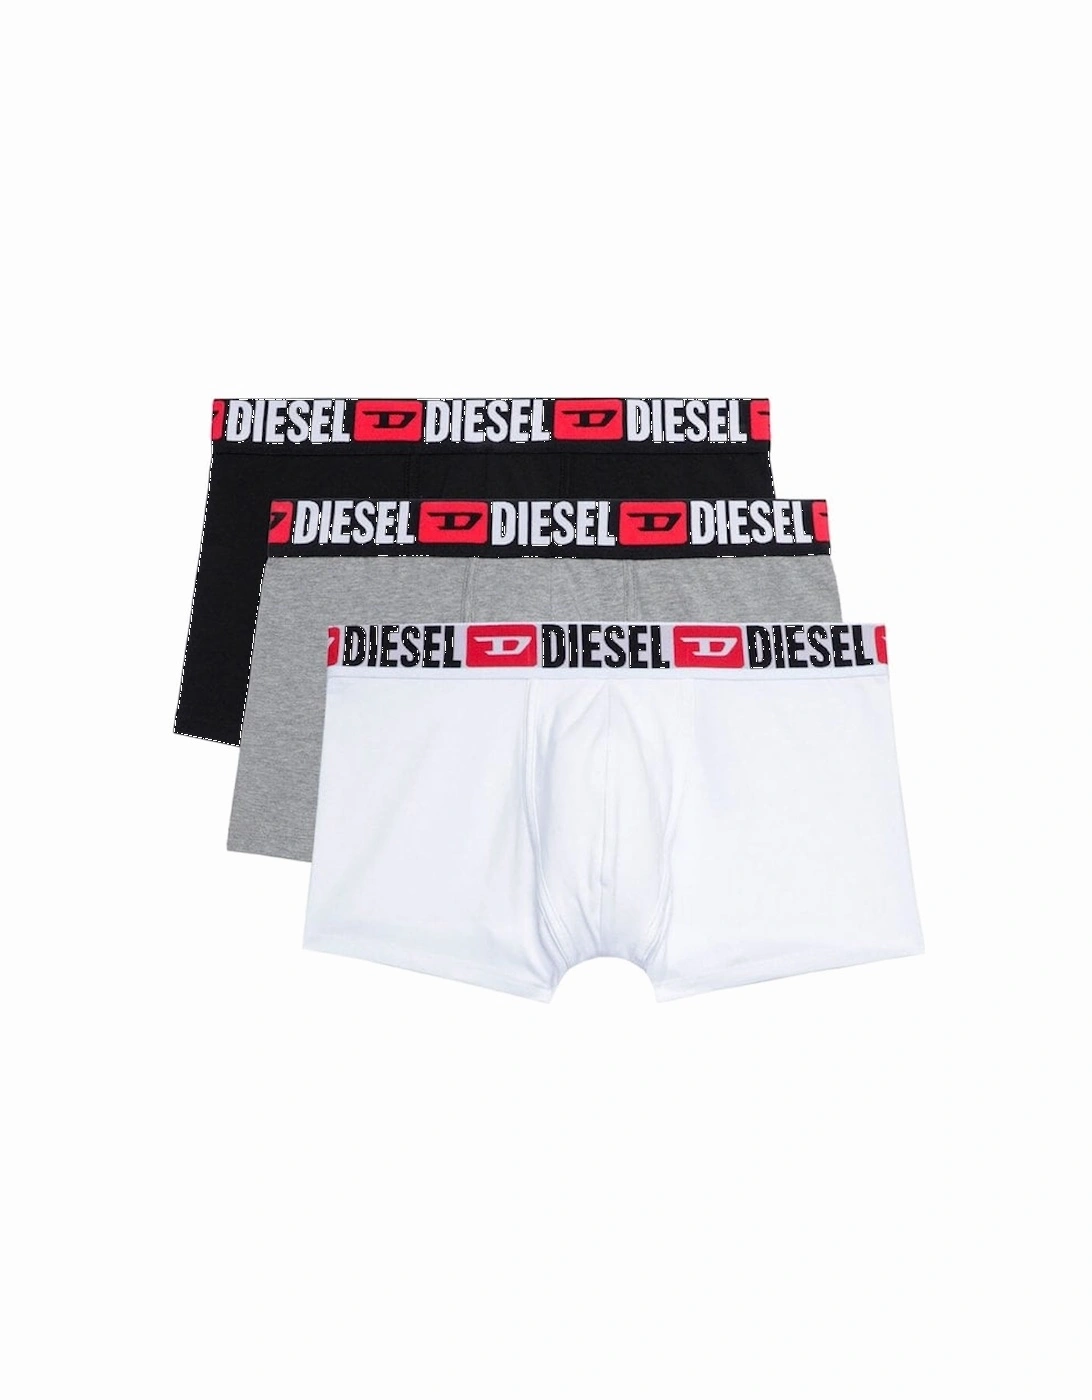 Umbx Damien 3 Pack Trunks Underwear E5896, 3 of 2